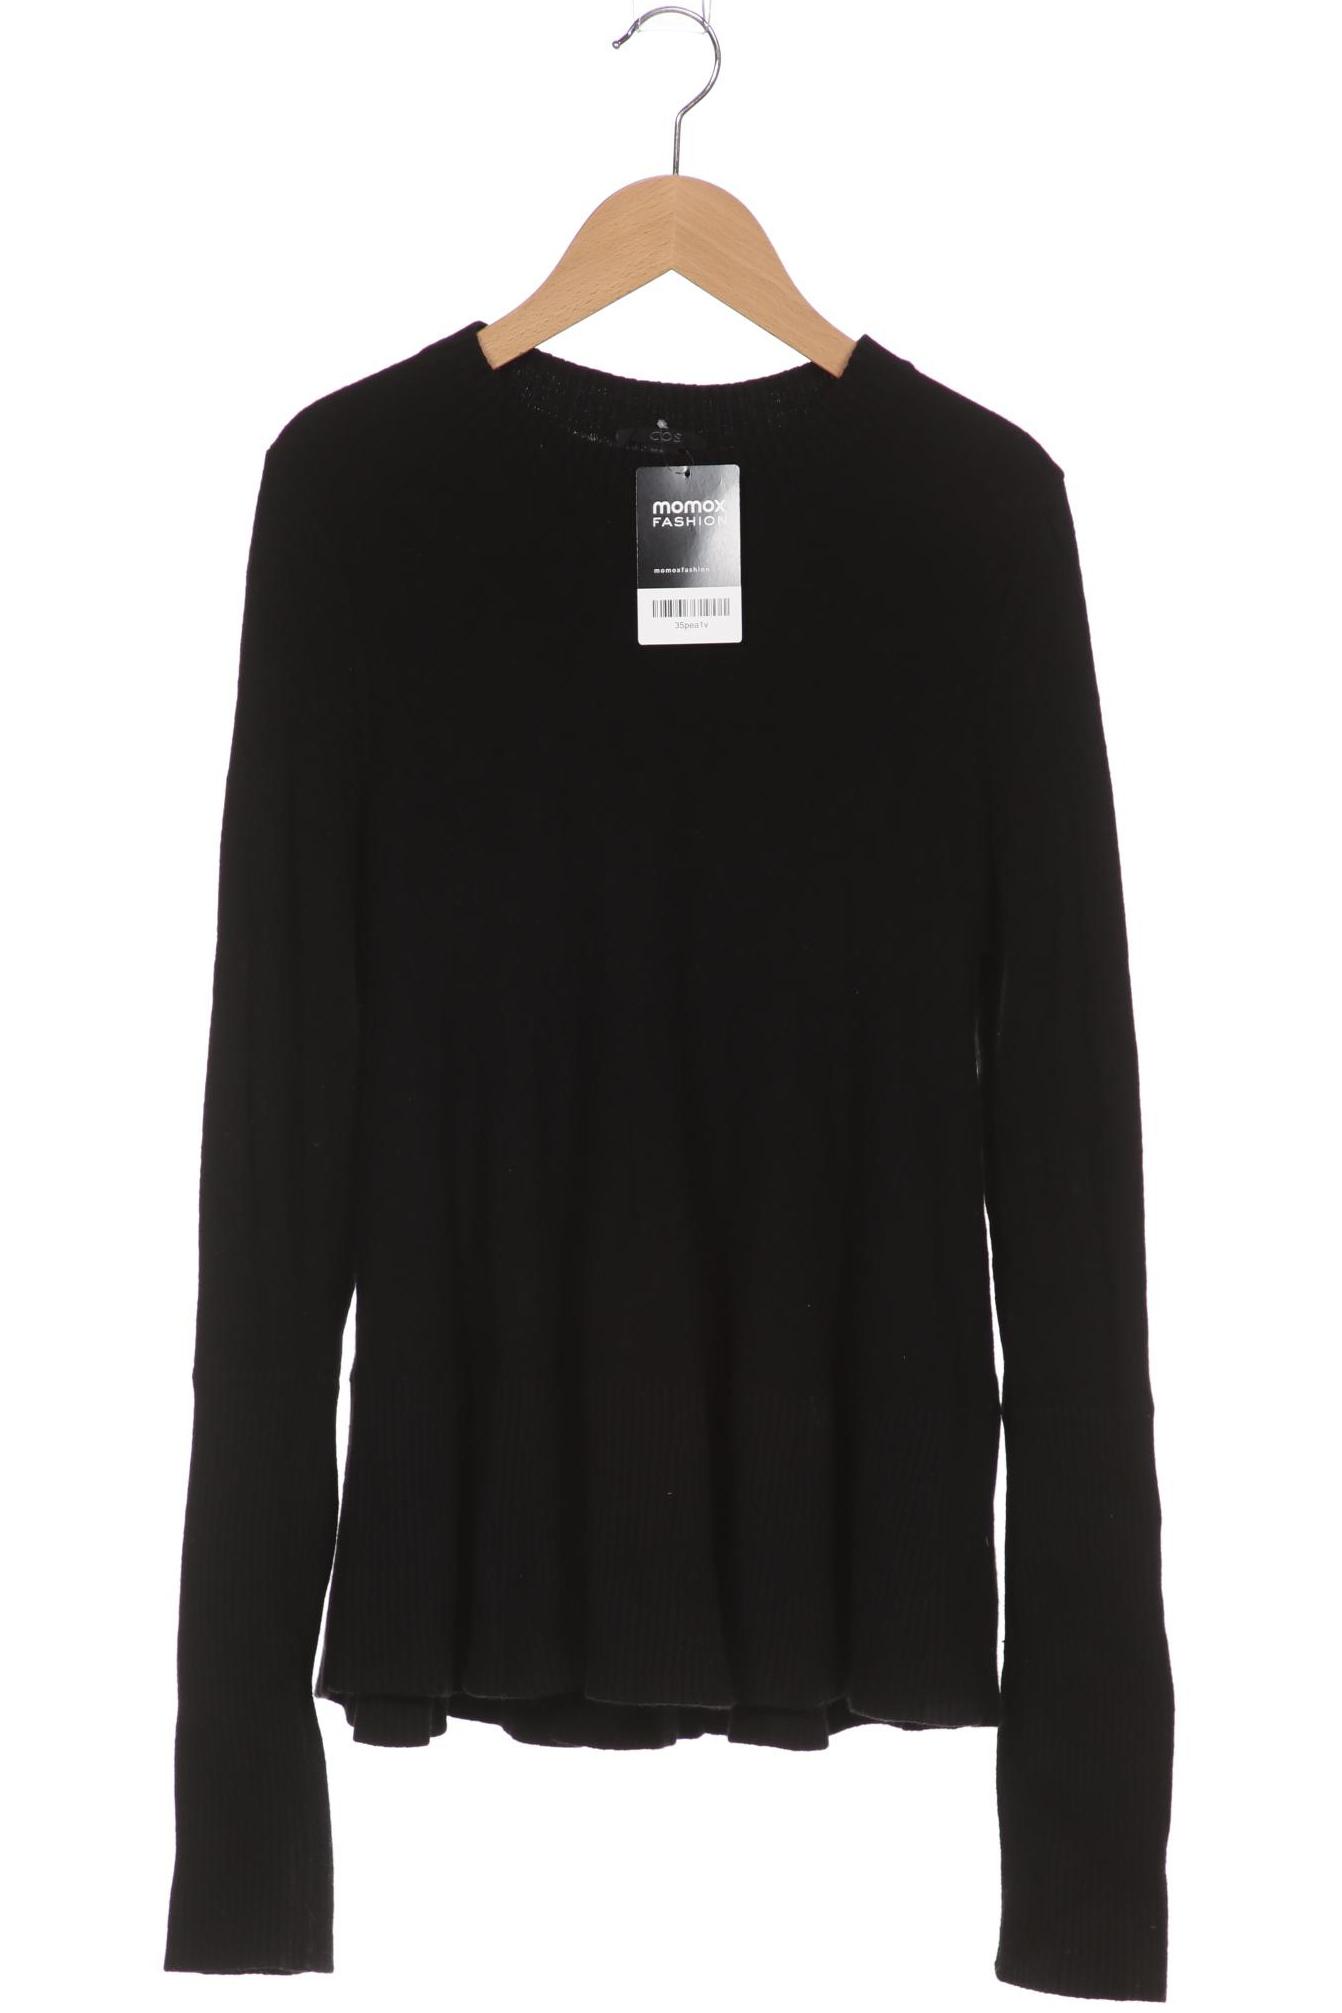 COS Damen Pullover, schwarz, Gr. 34 von COS